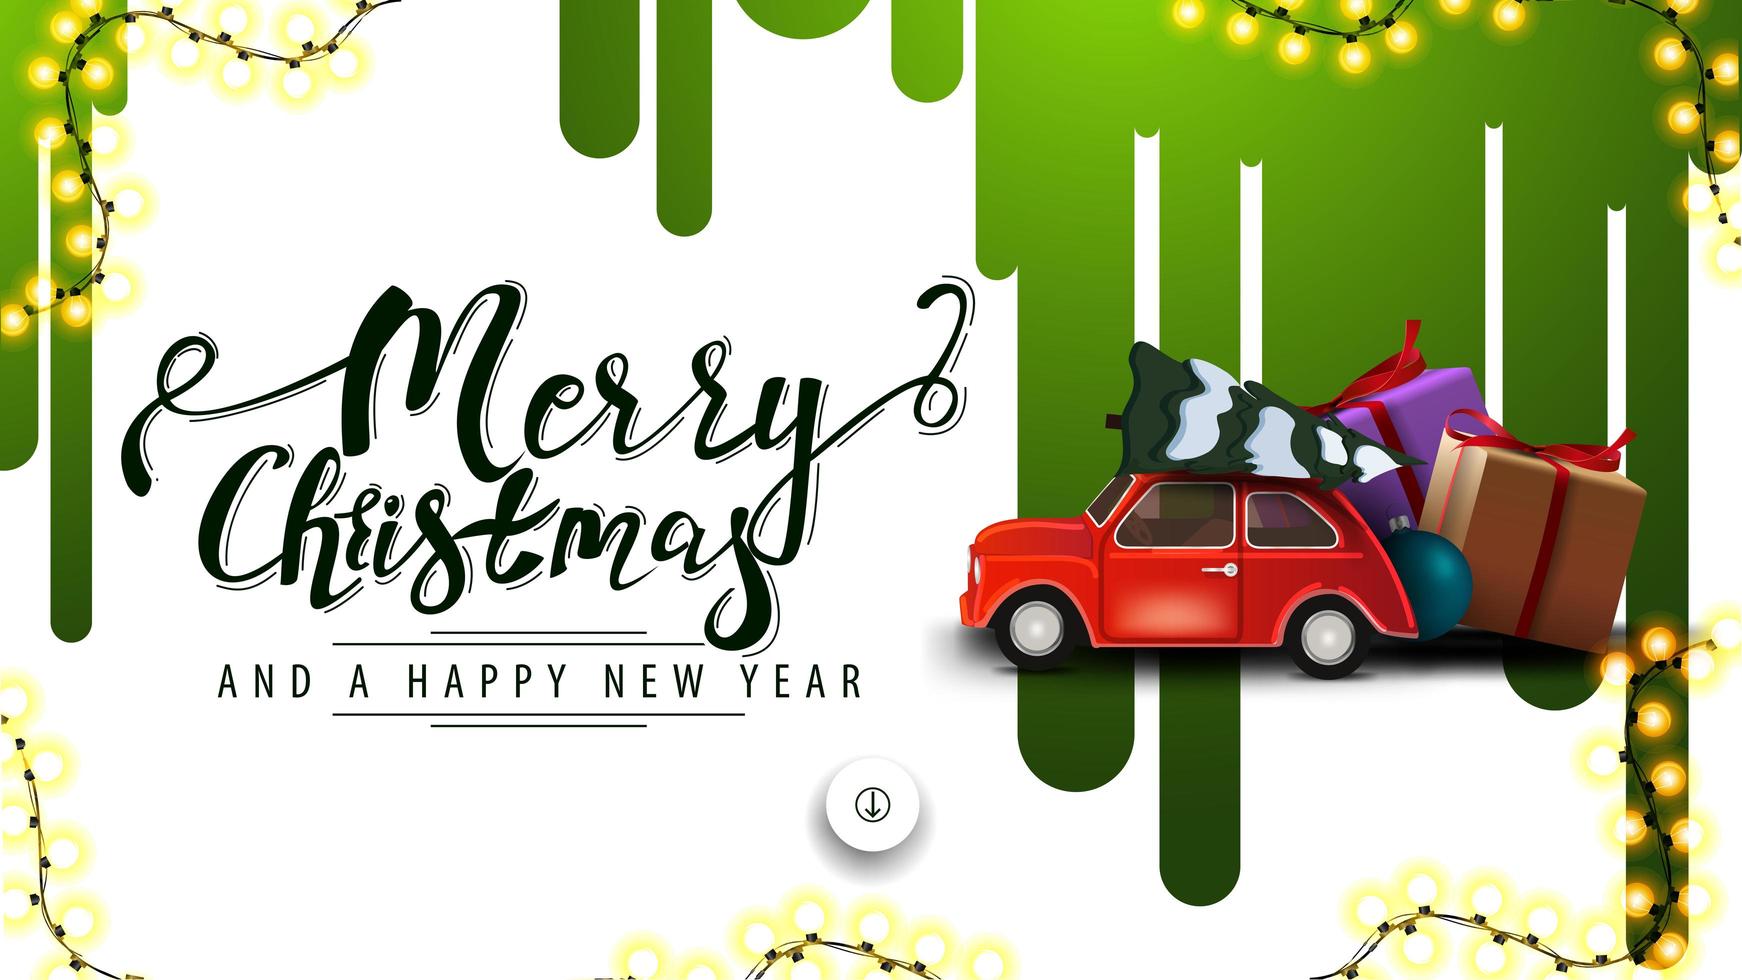 buon natale e felice anno nuovo, banner sconto bianco con strisce verdi di vernice sul muro bianco e auto d'epoca rossa che trasportano albero di natale vettore